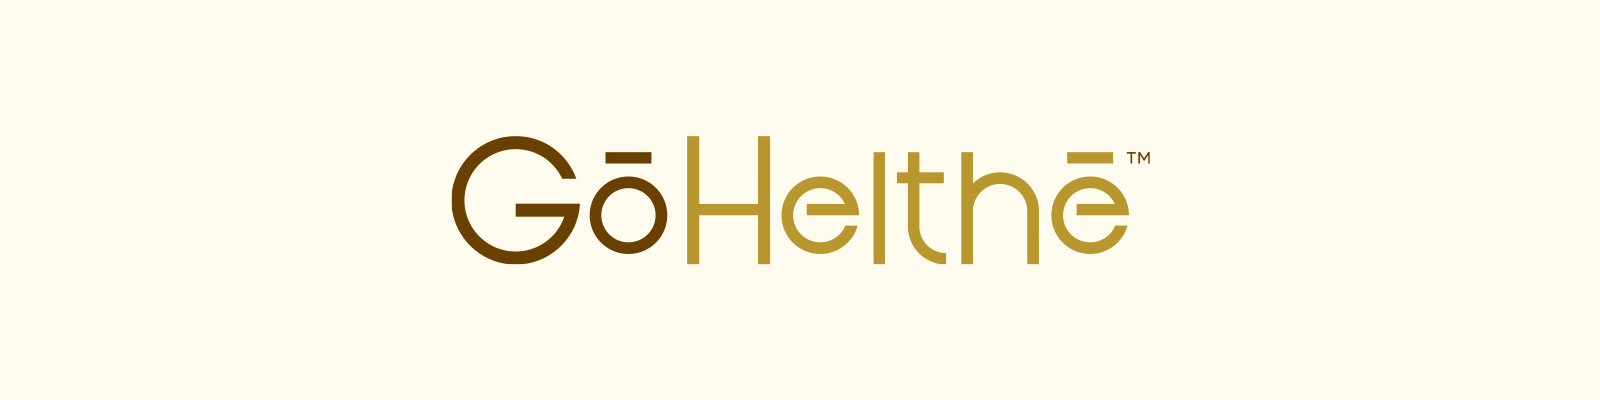 Go Helthe Brand Identity Logo